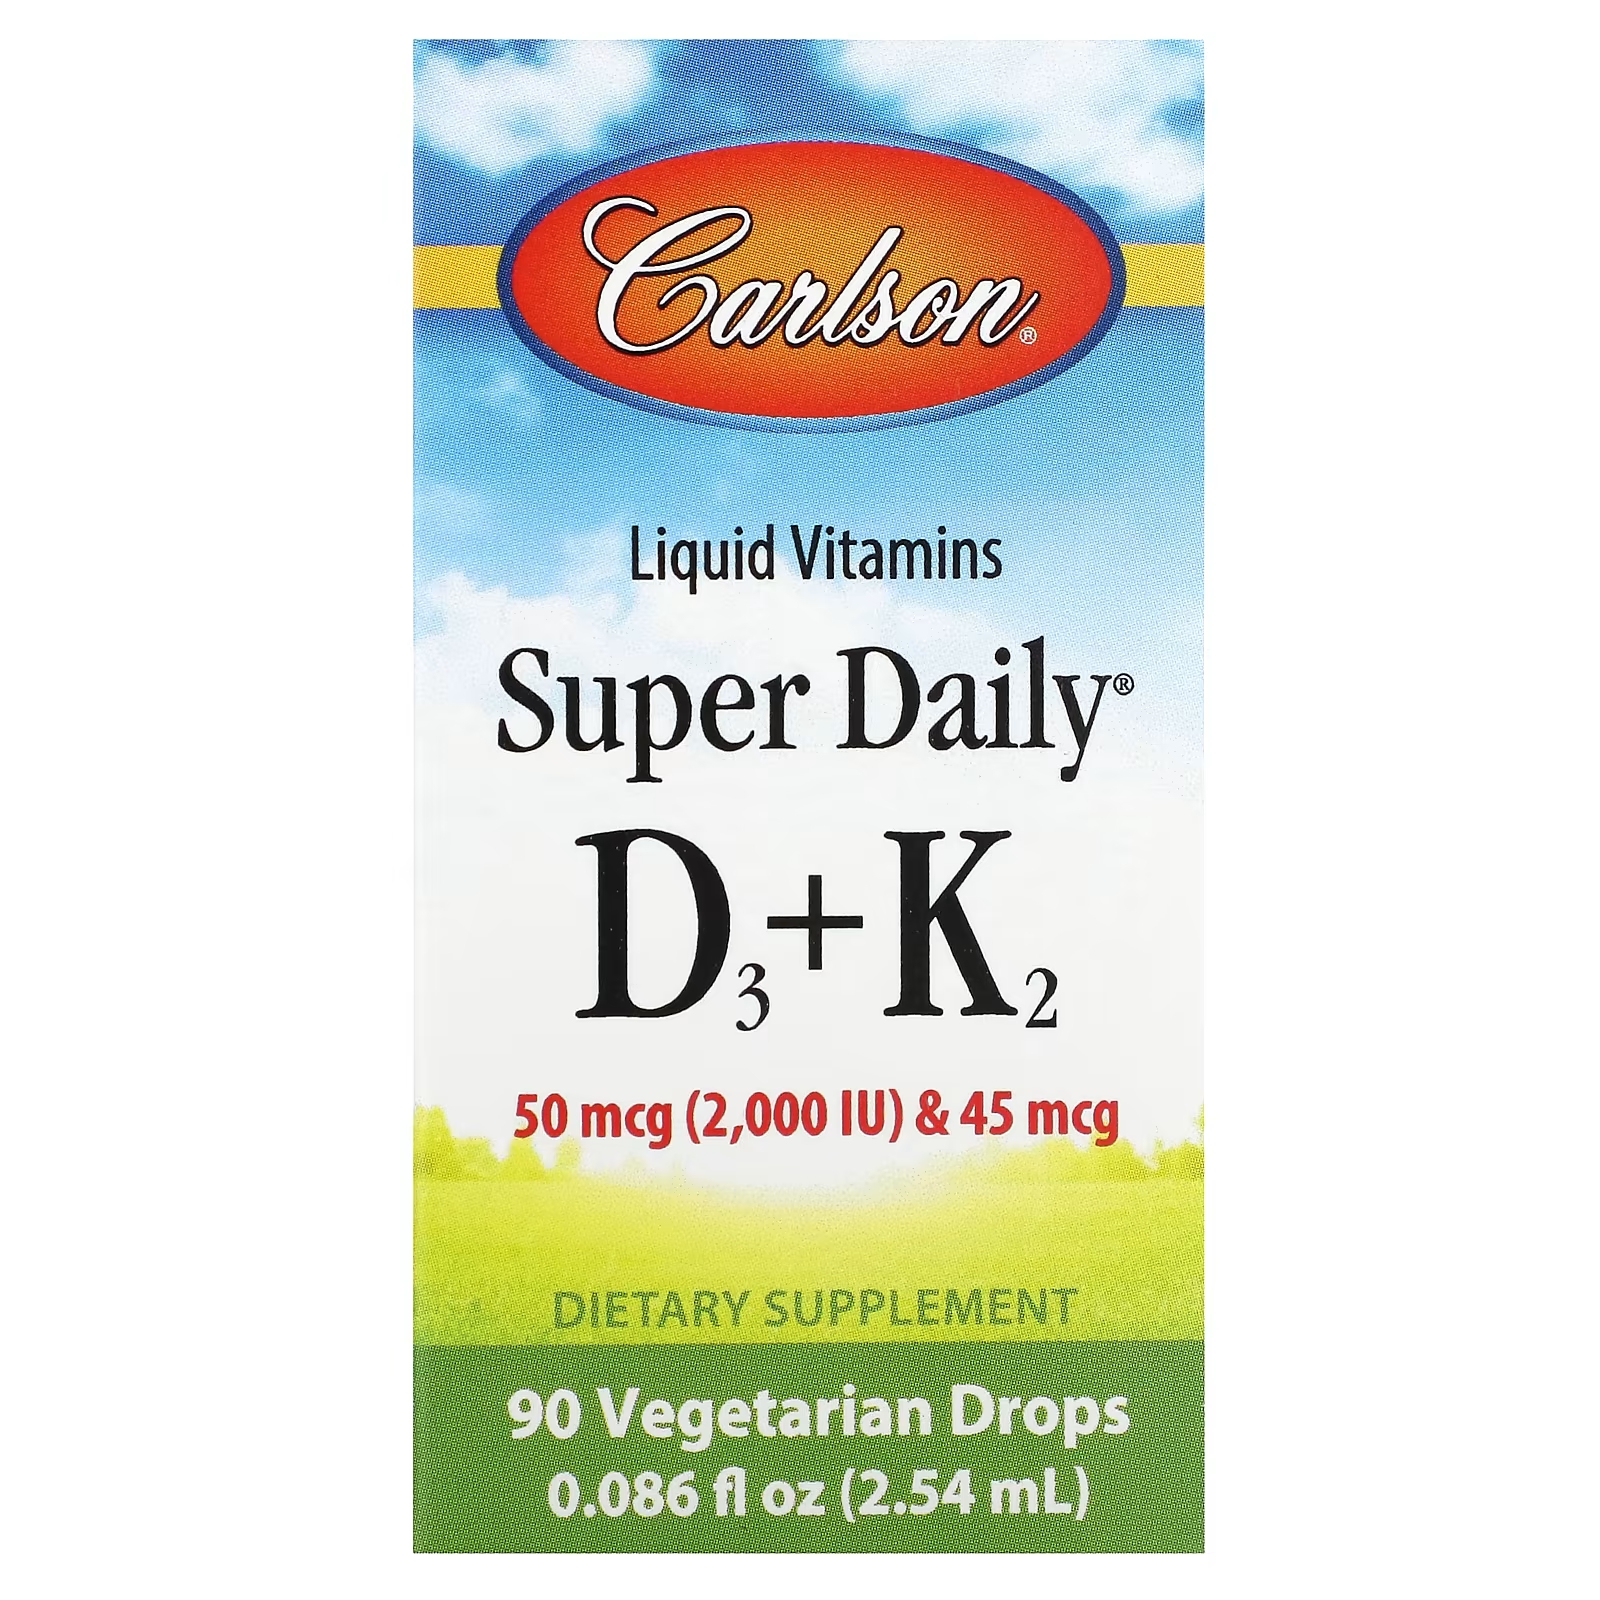 Витамины в жидкой форме Carlson Super Daily D3 + K2, 90 вегетарианских капель